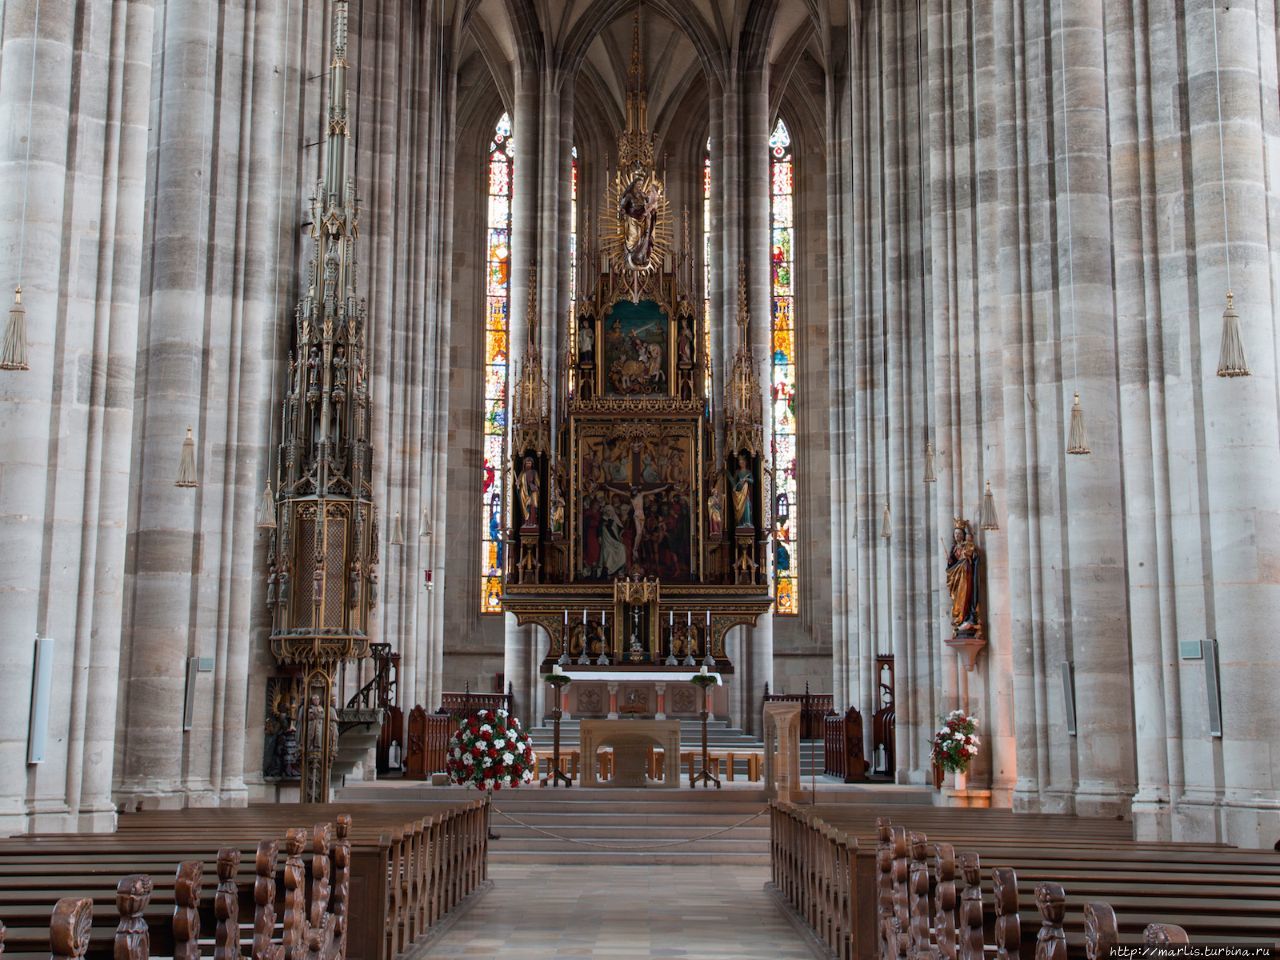 Главный алтарь выполнен в 1642 году  с использованием скульпруты распятия 1490 года, реставрация проведена в 1856 году. Фото из интернета Динкельсбюль, Германия